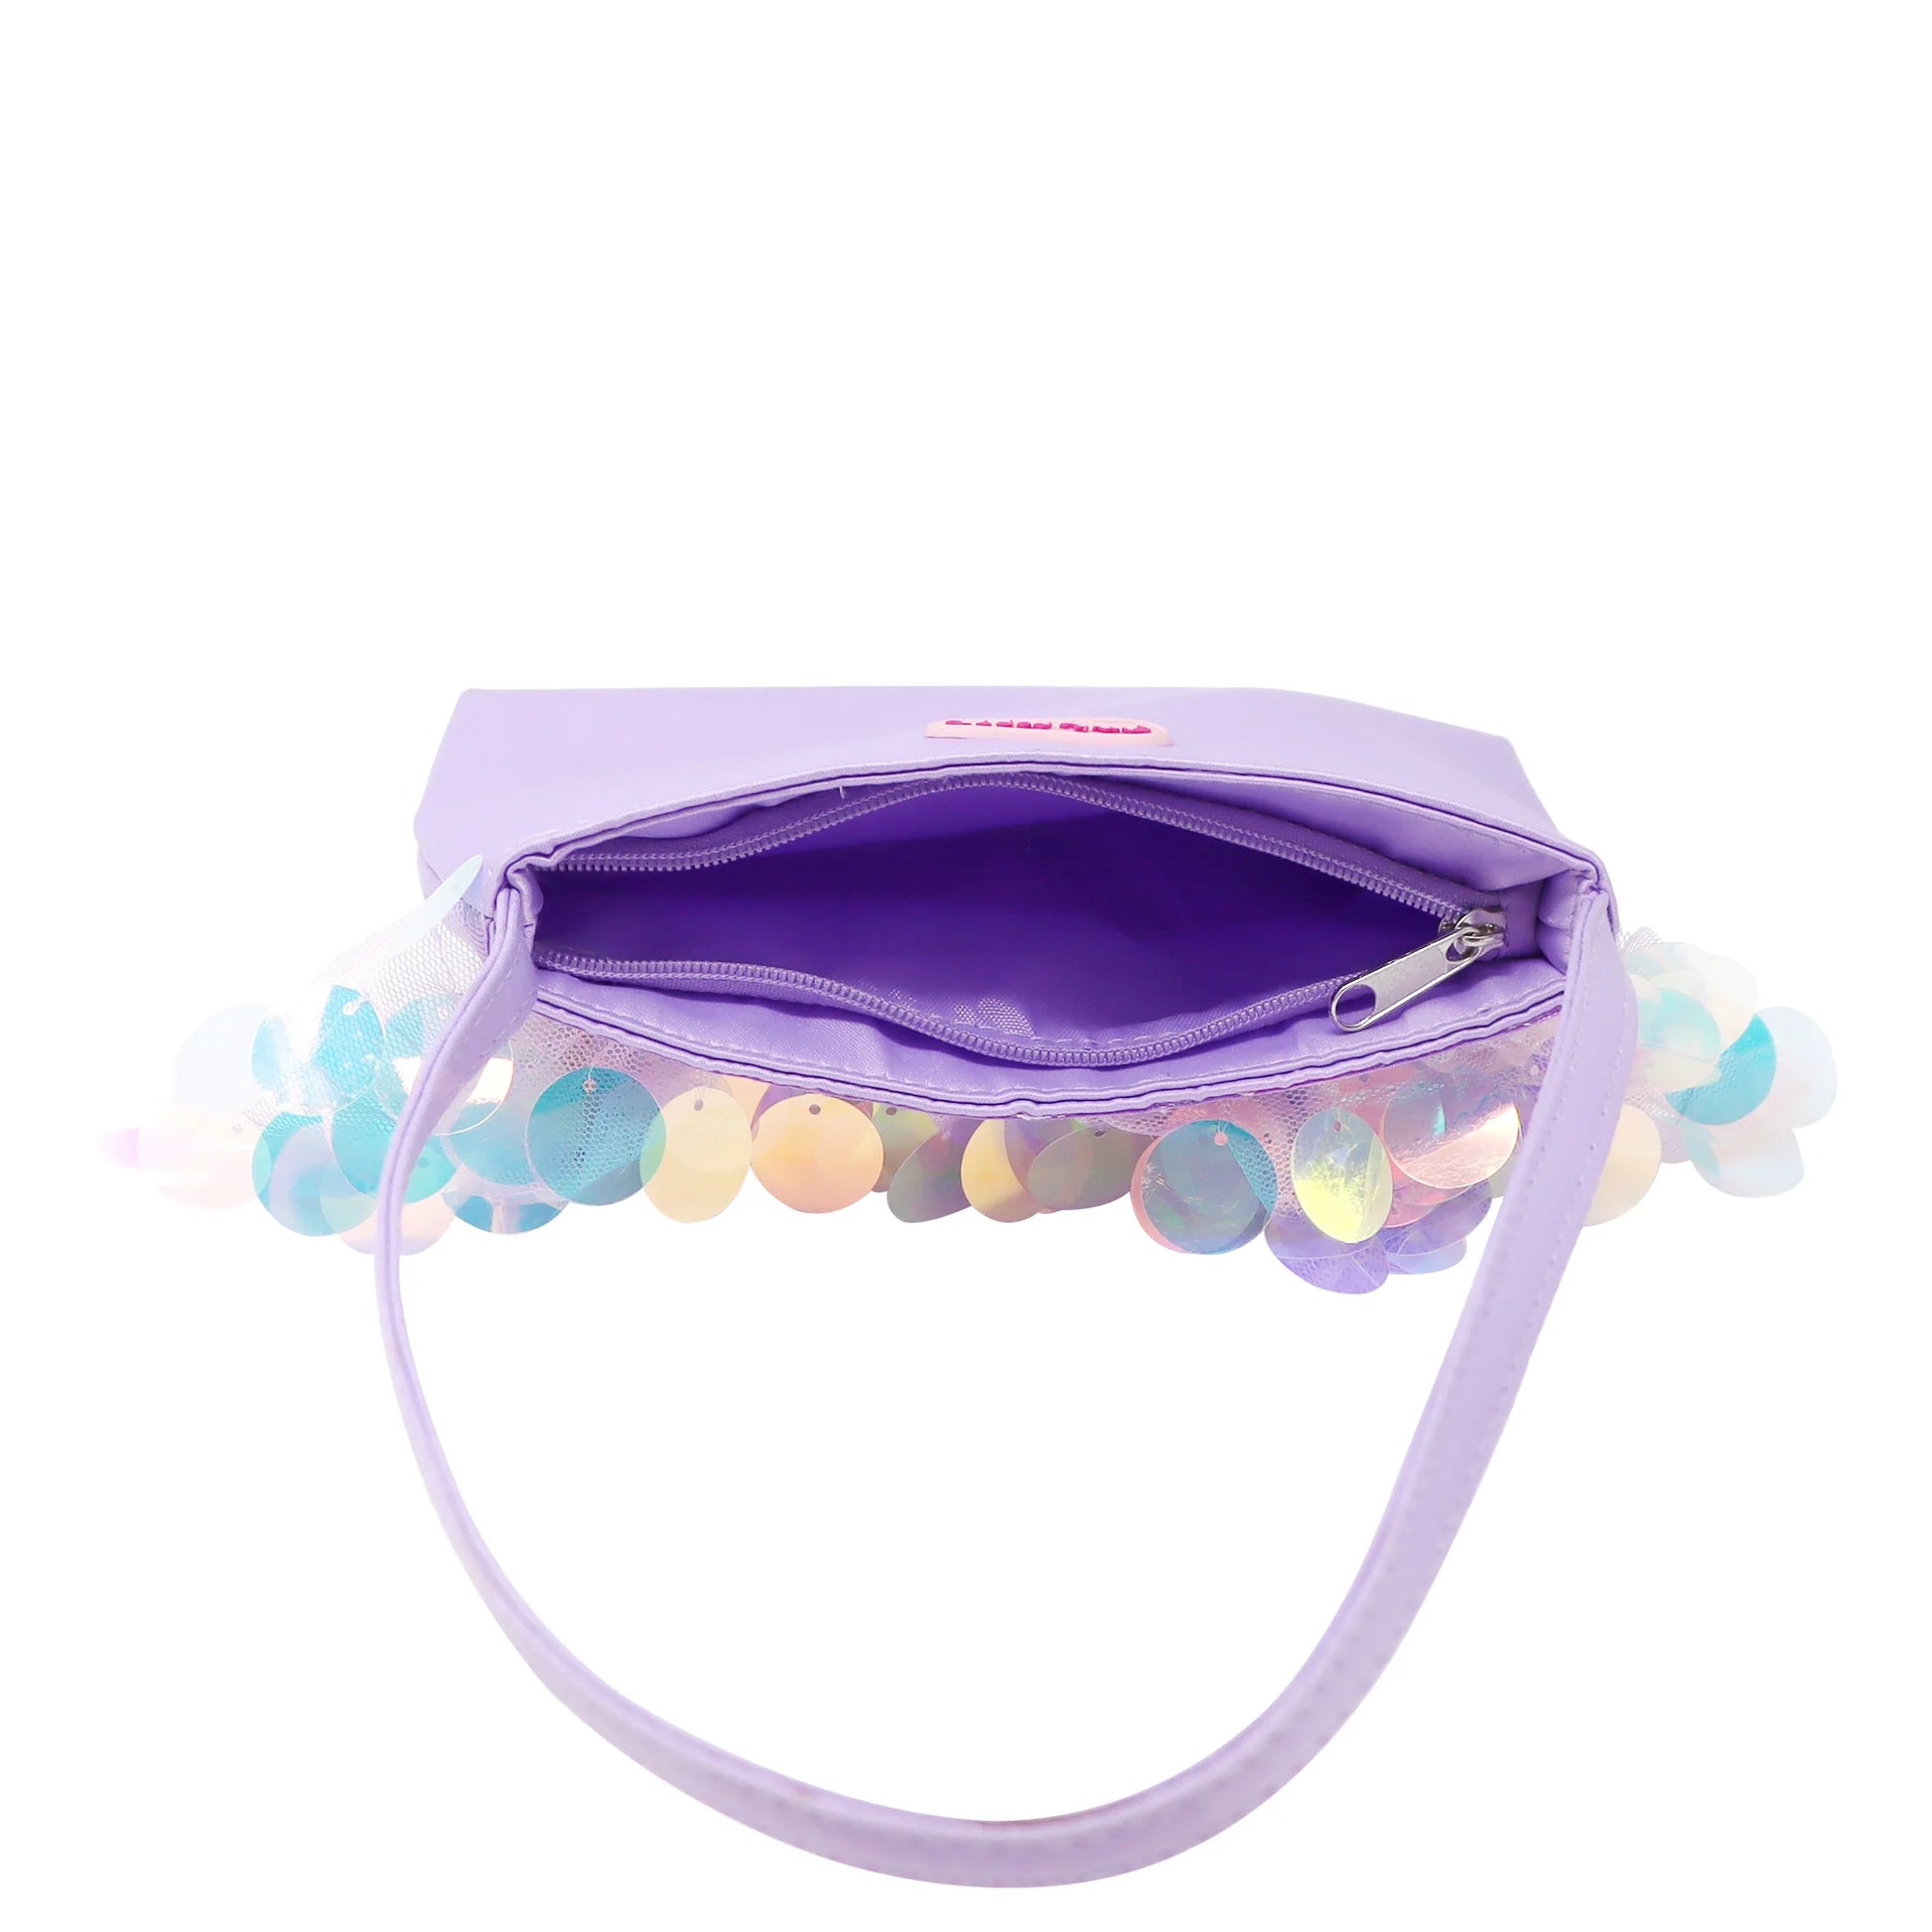 Shimmering Mermaid Iridescent Disc Sequin Handbag